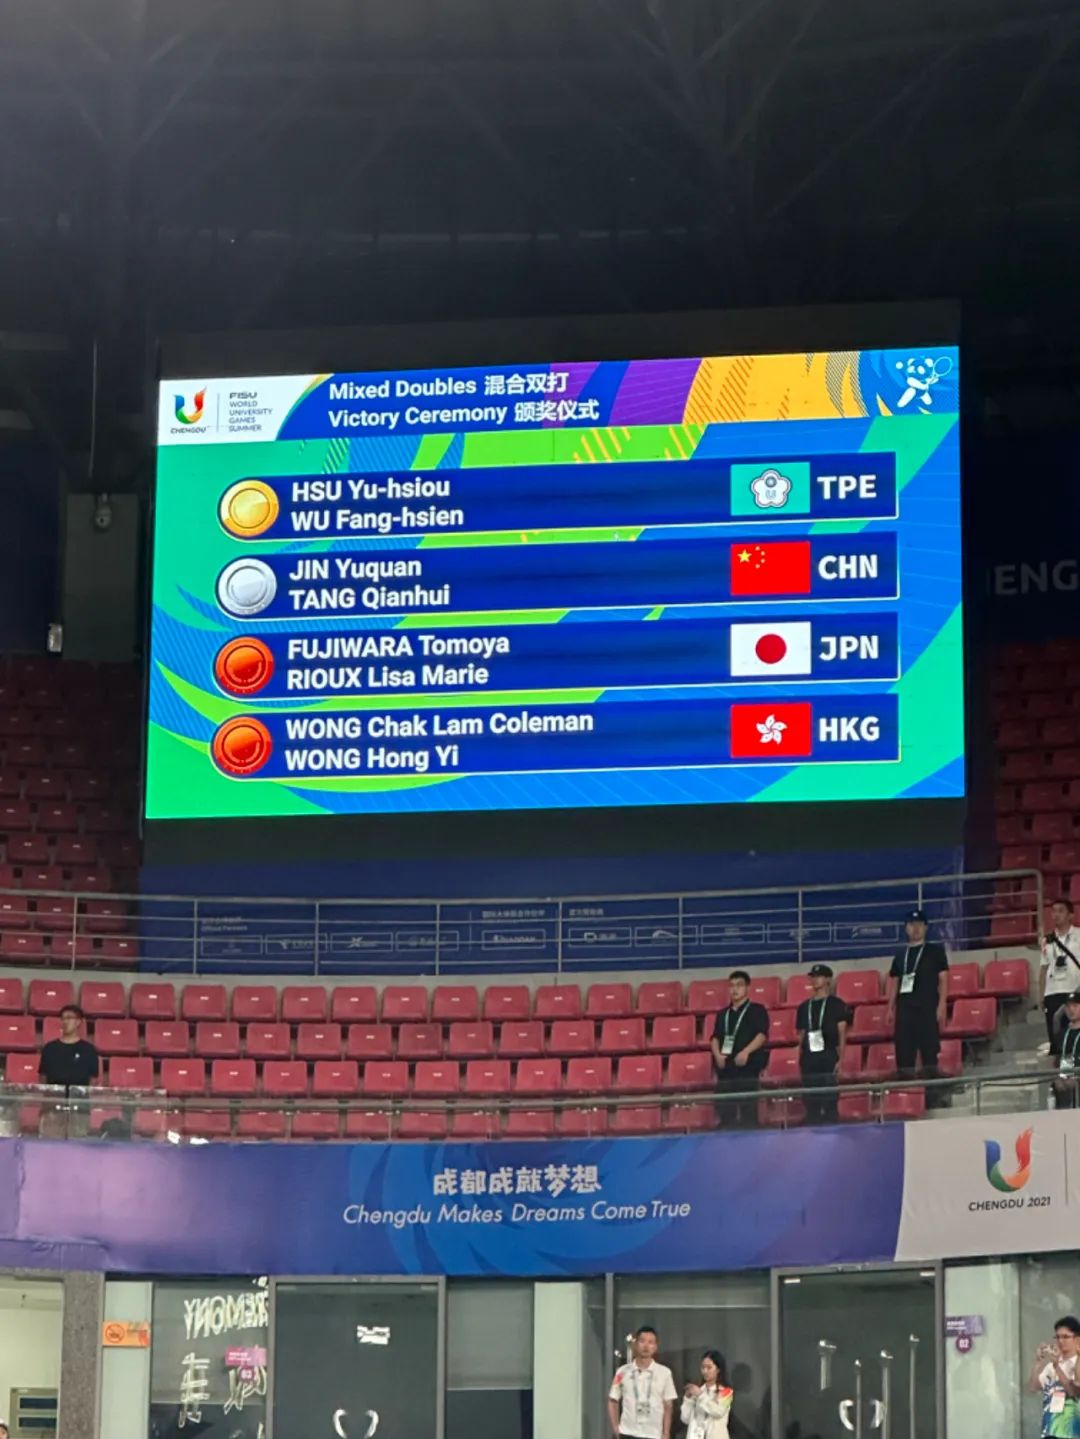 玲珑轮胎网球队员金雨全荣获第31届世界大运会网球混合双打银牌